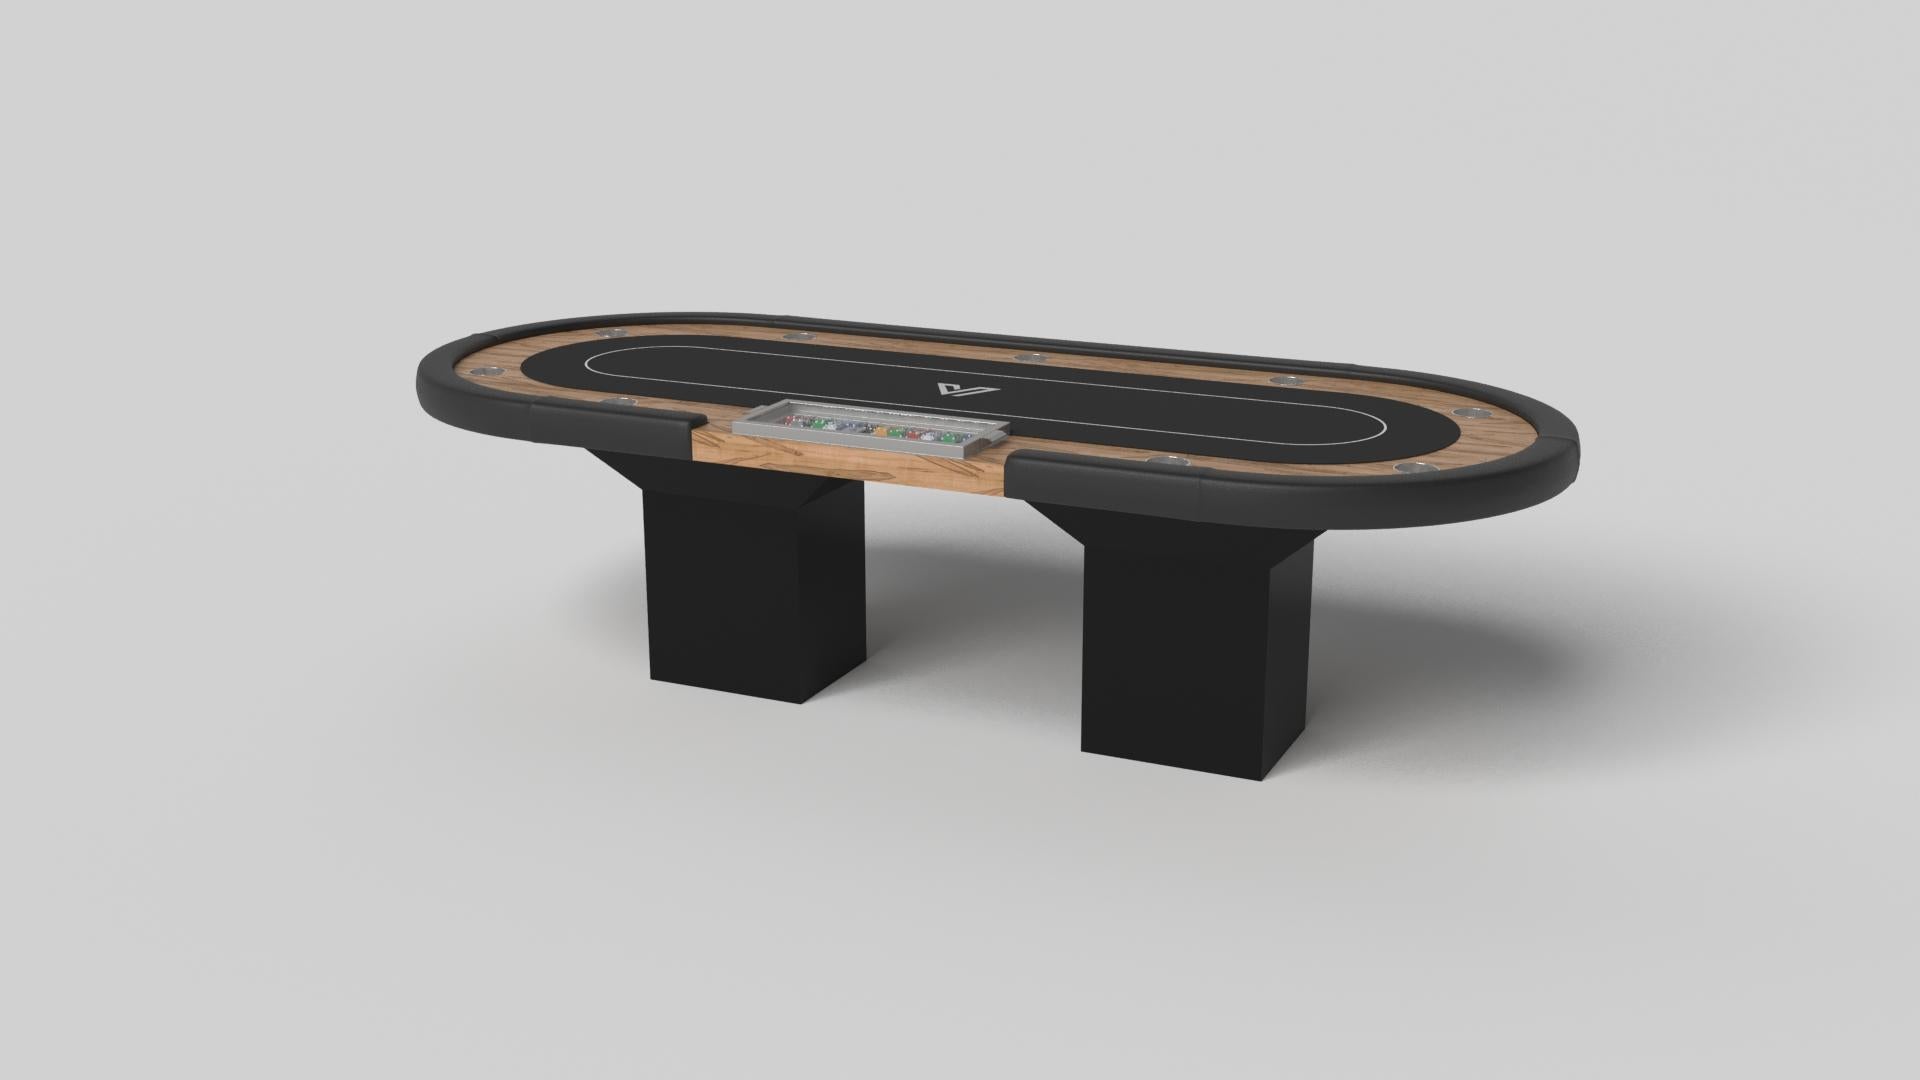 Le design minimaliste rencontre l'élégance opulente dans la table de poker Trestle. Détaillée avec une surface professionnelle pour des jeux sans fin, cette table contemporaine est fabriquée de manière experte. Les pieds carrés lui confèrent un